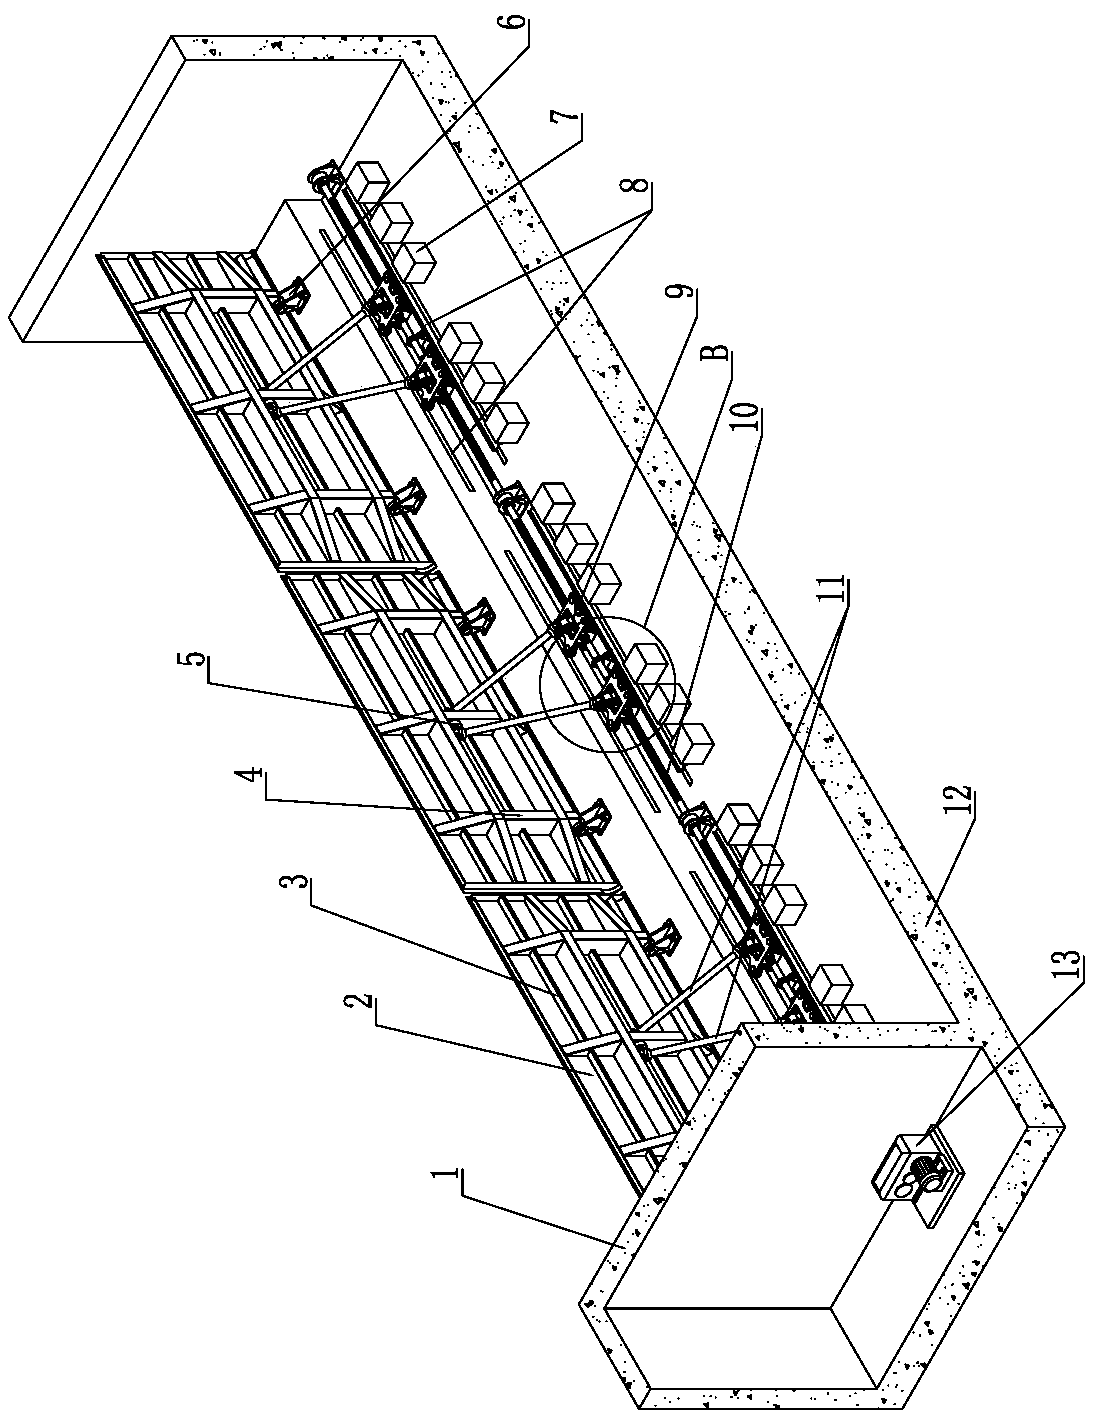 A screw-driven flap gate